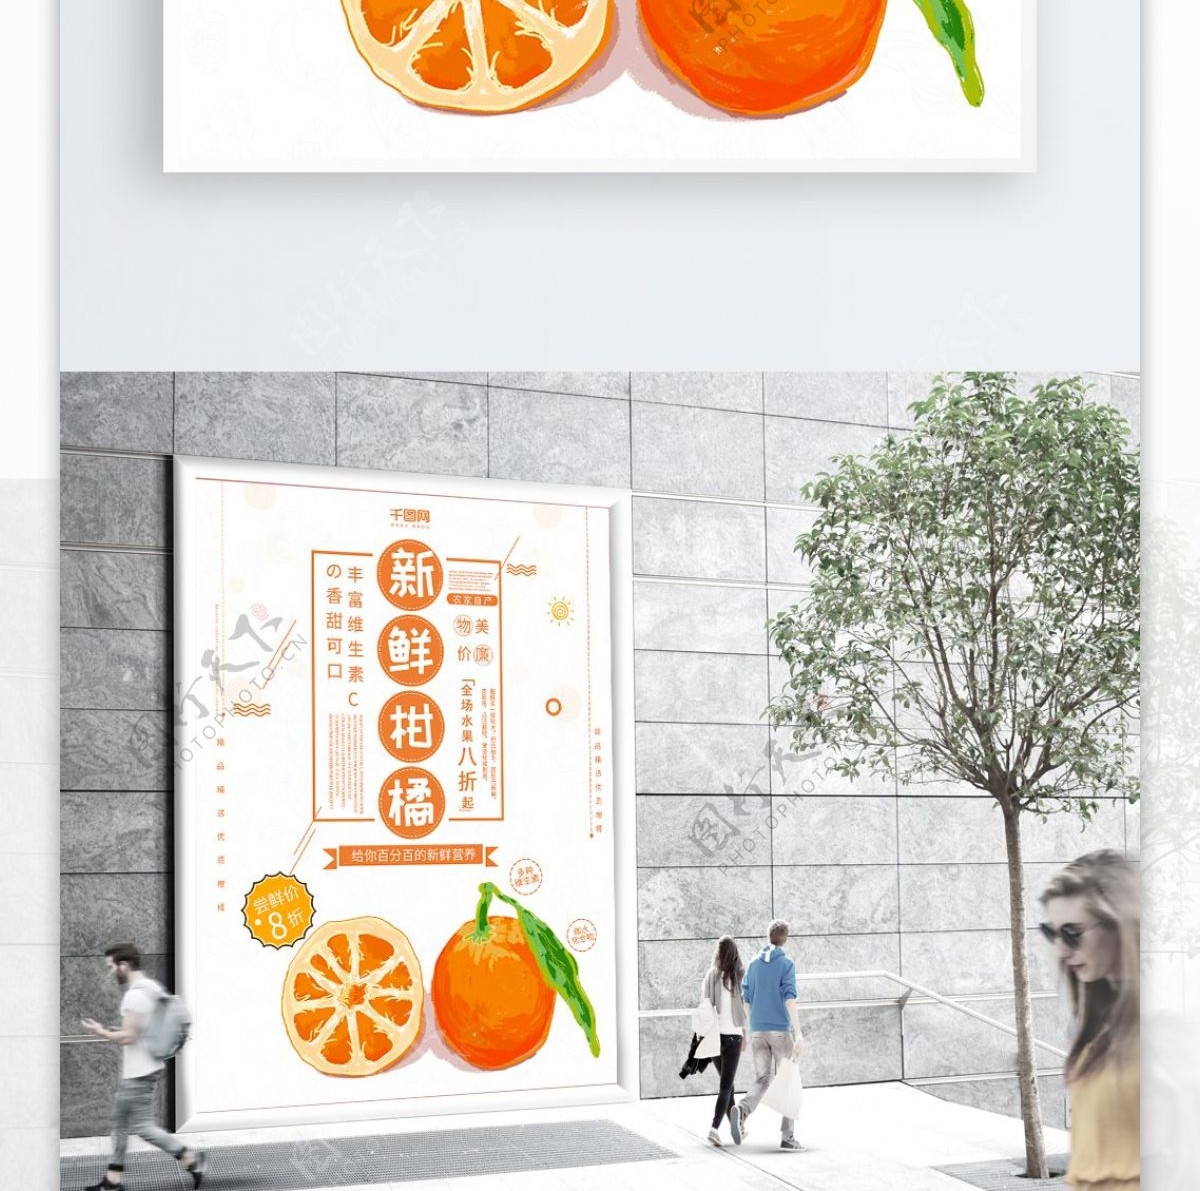 原创创意新鲜柑橘特产促销海报